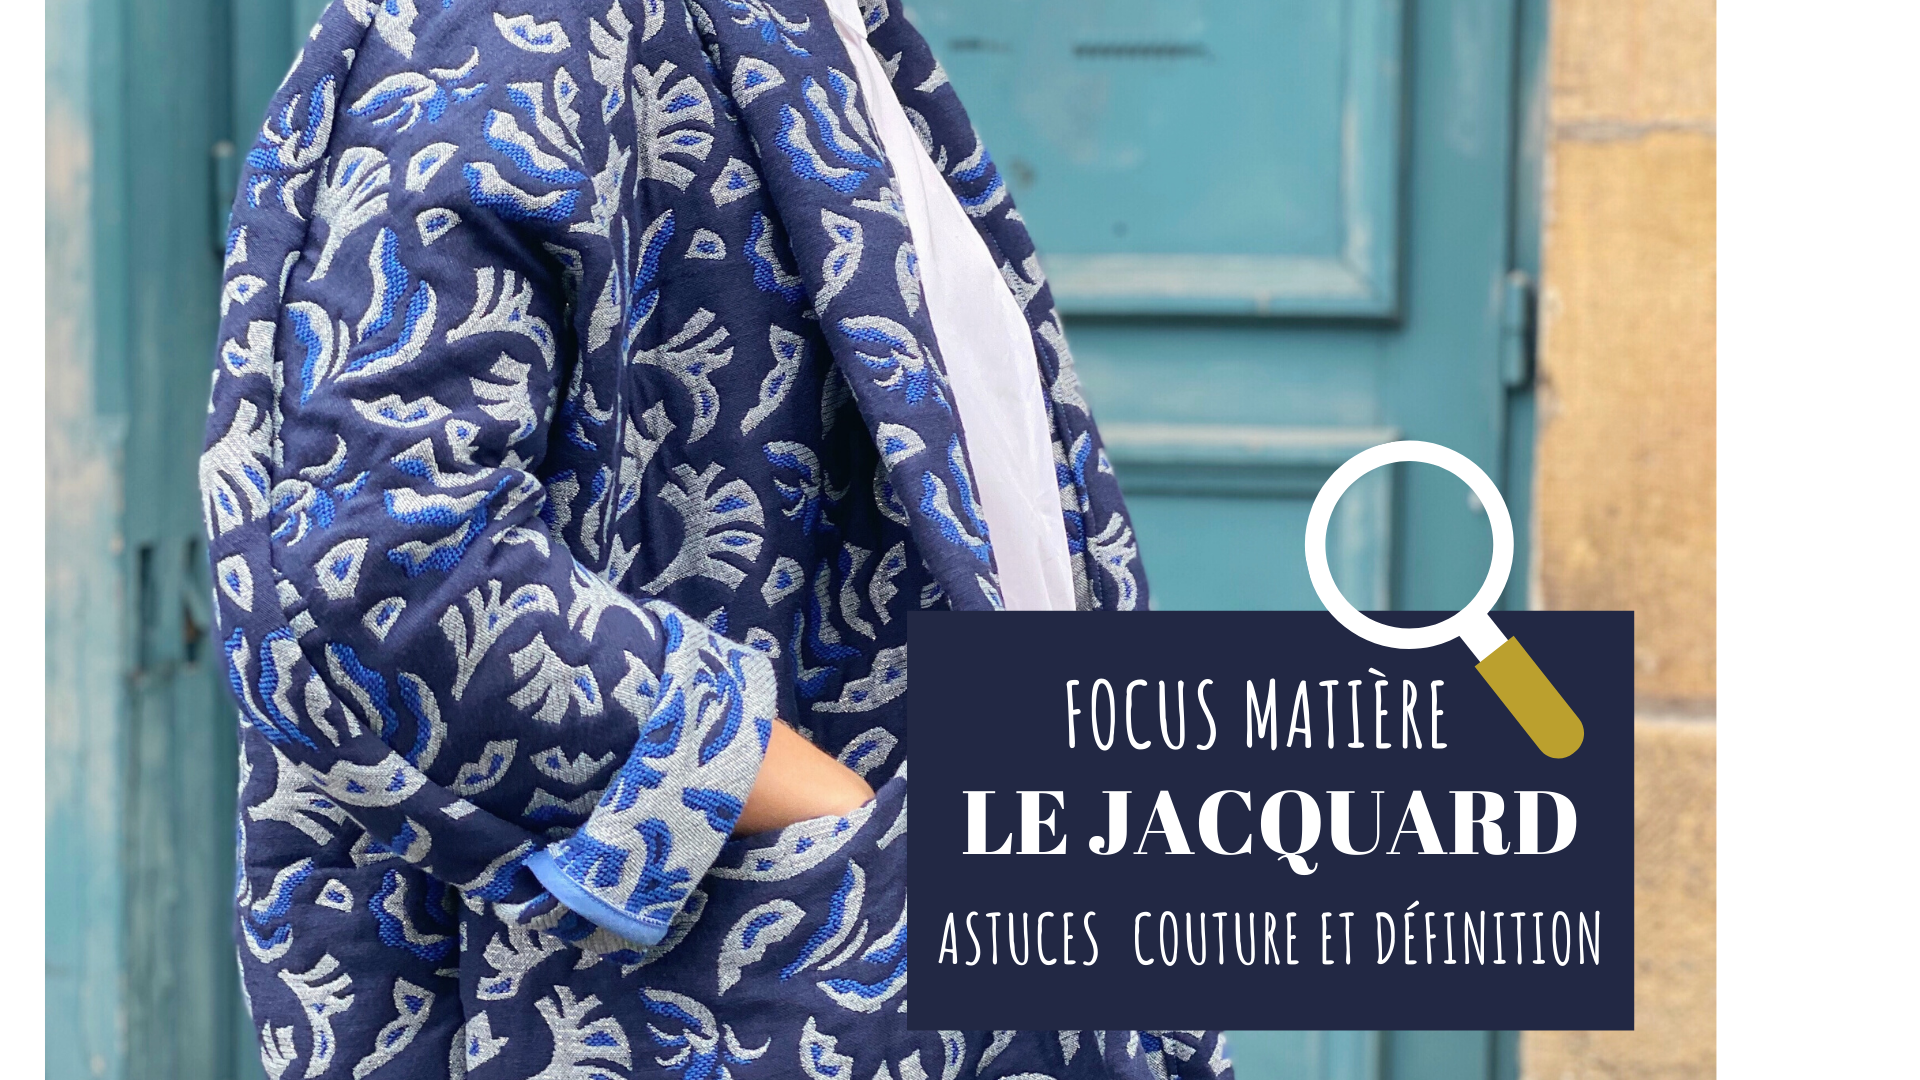 Focus matière #1 : le jacquard